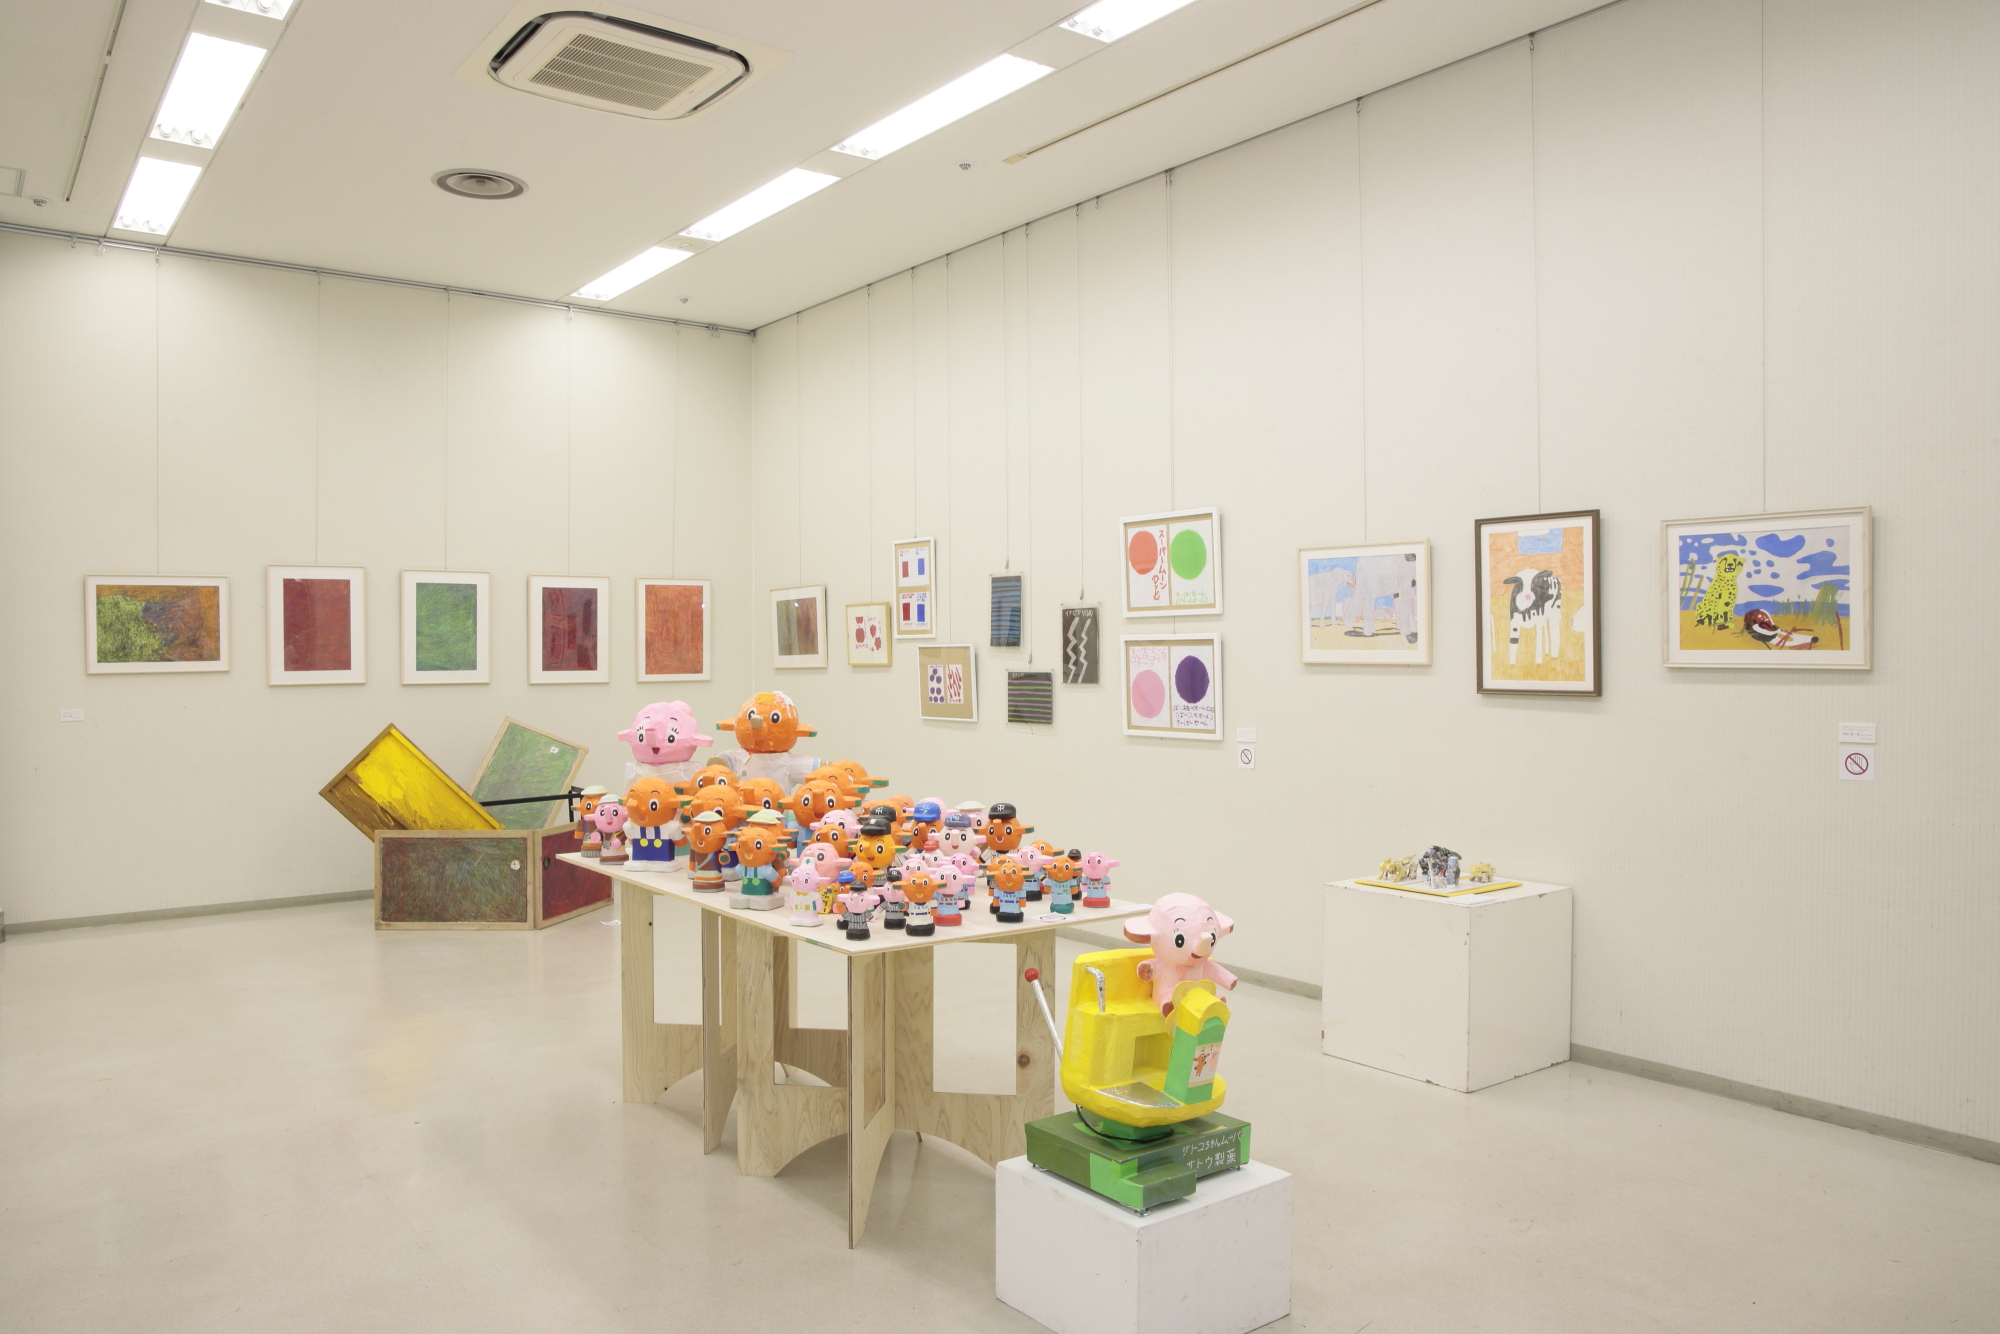 室内の白い壁に飾られた絵画や、中央のテーブルに色とりどりの象のキャラクターが置かれた展示会の写真